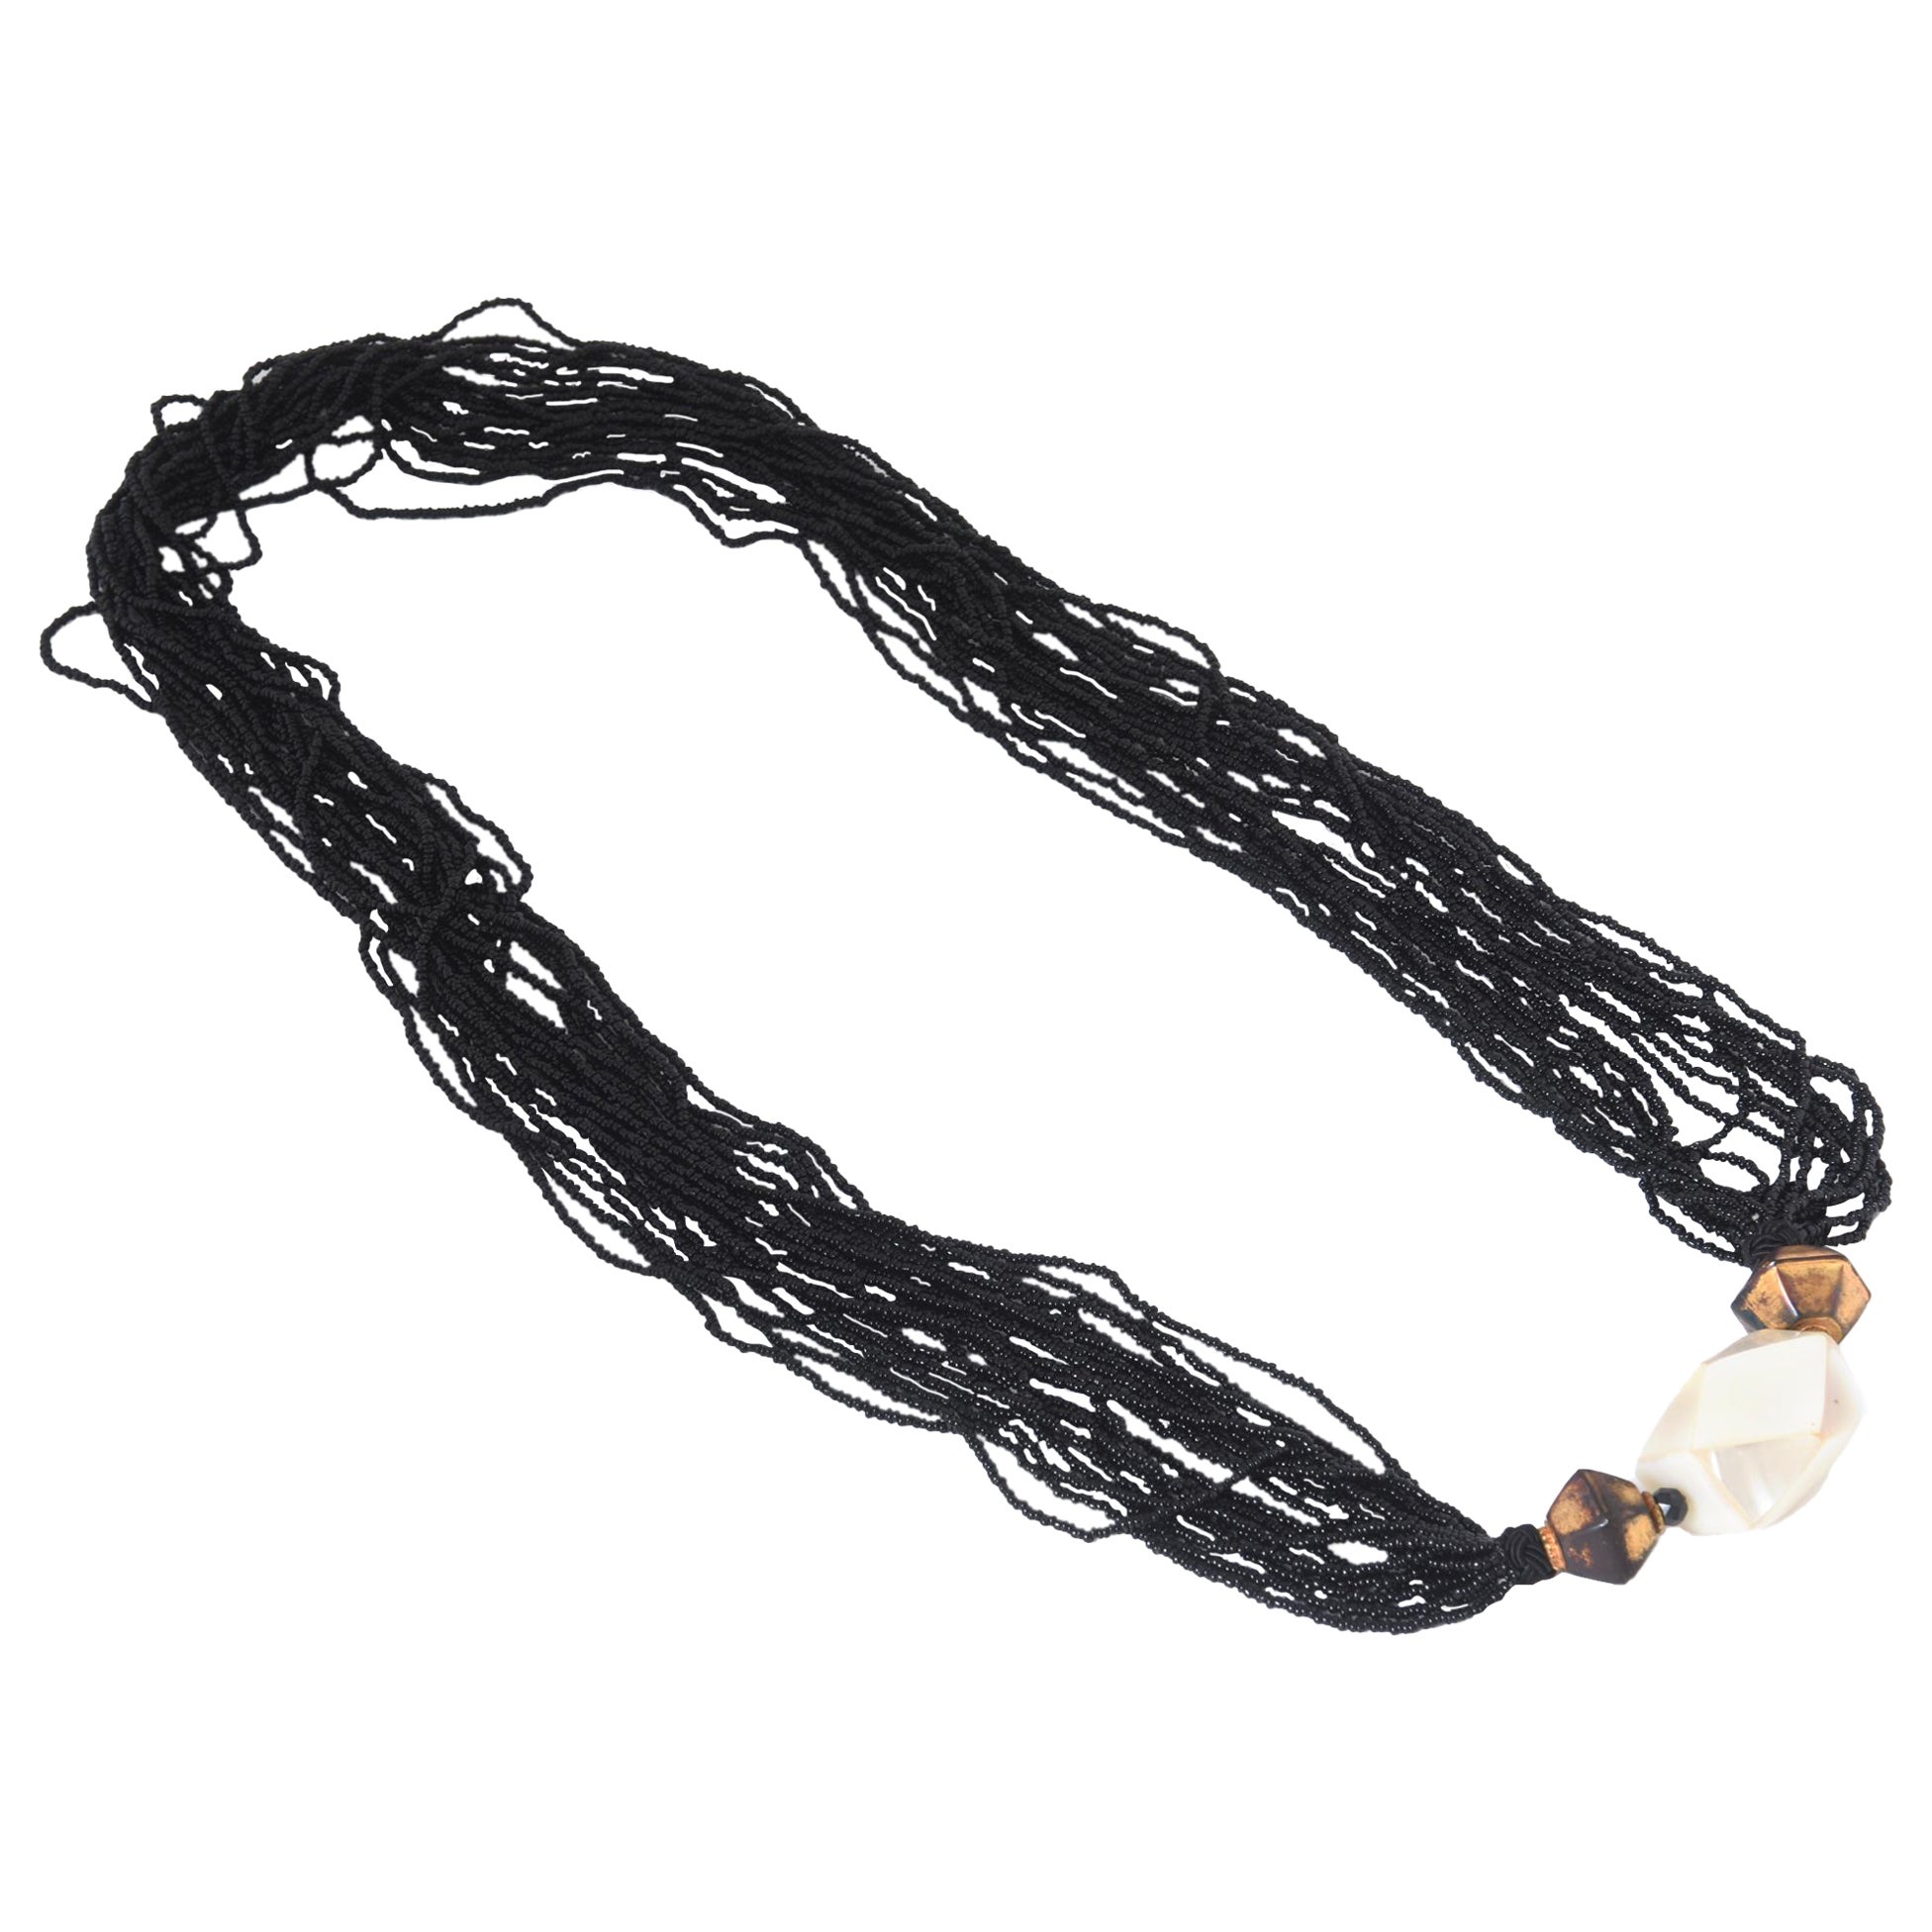 Long collier de perles noires à plusieurs rangs et perles en nacre